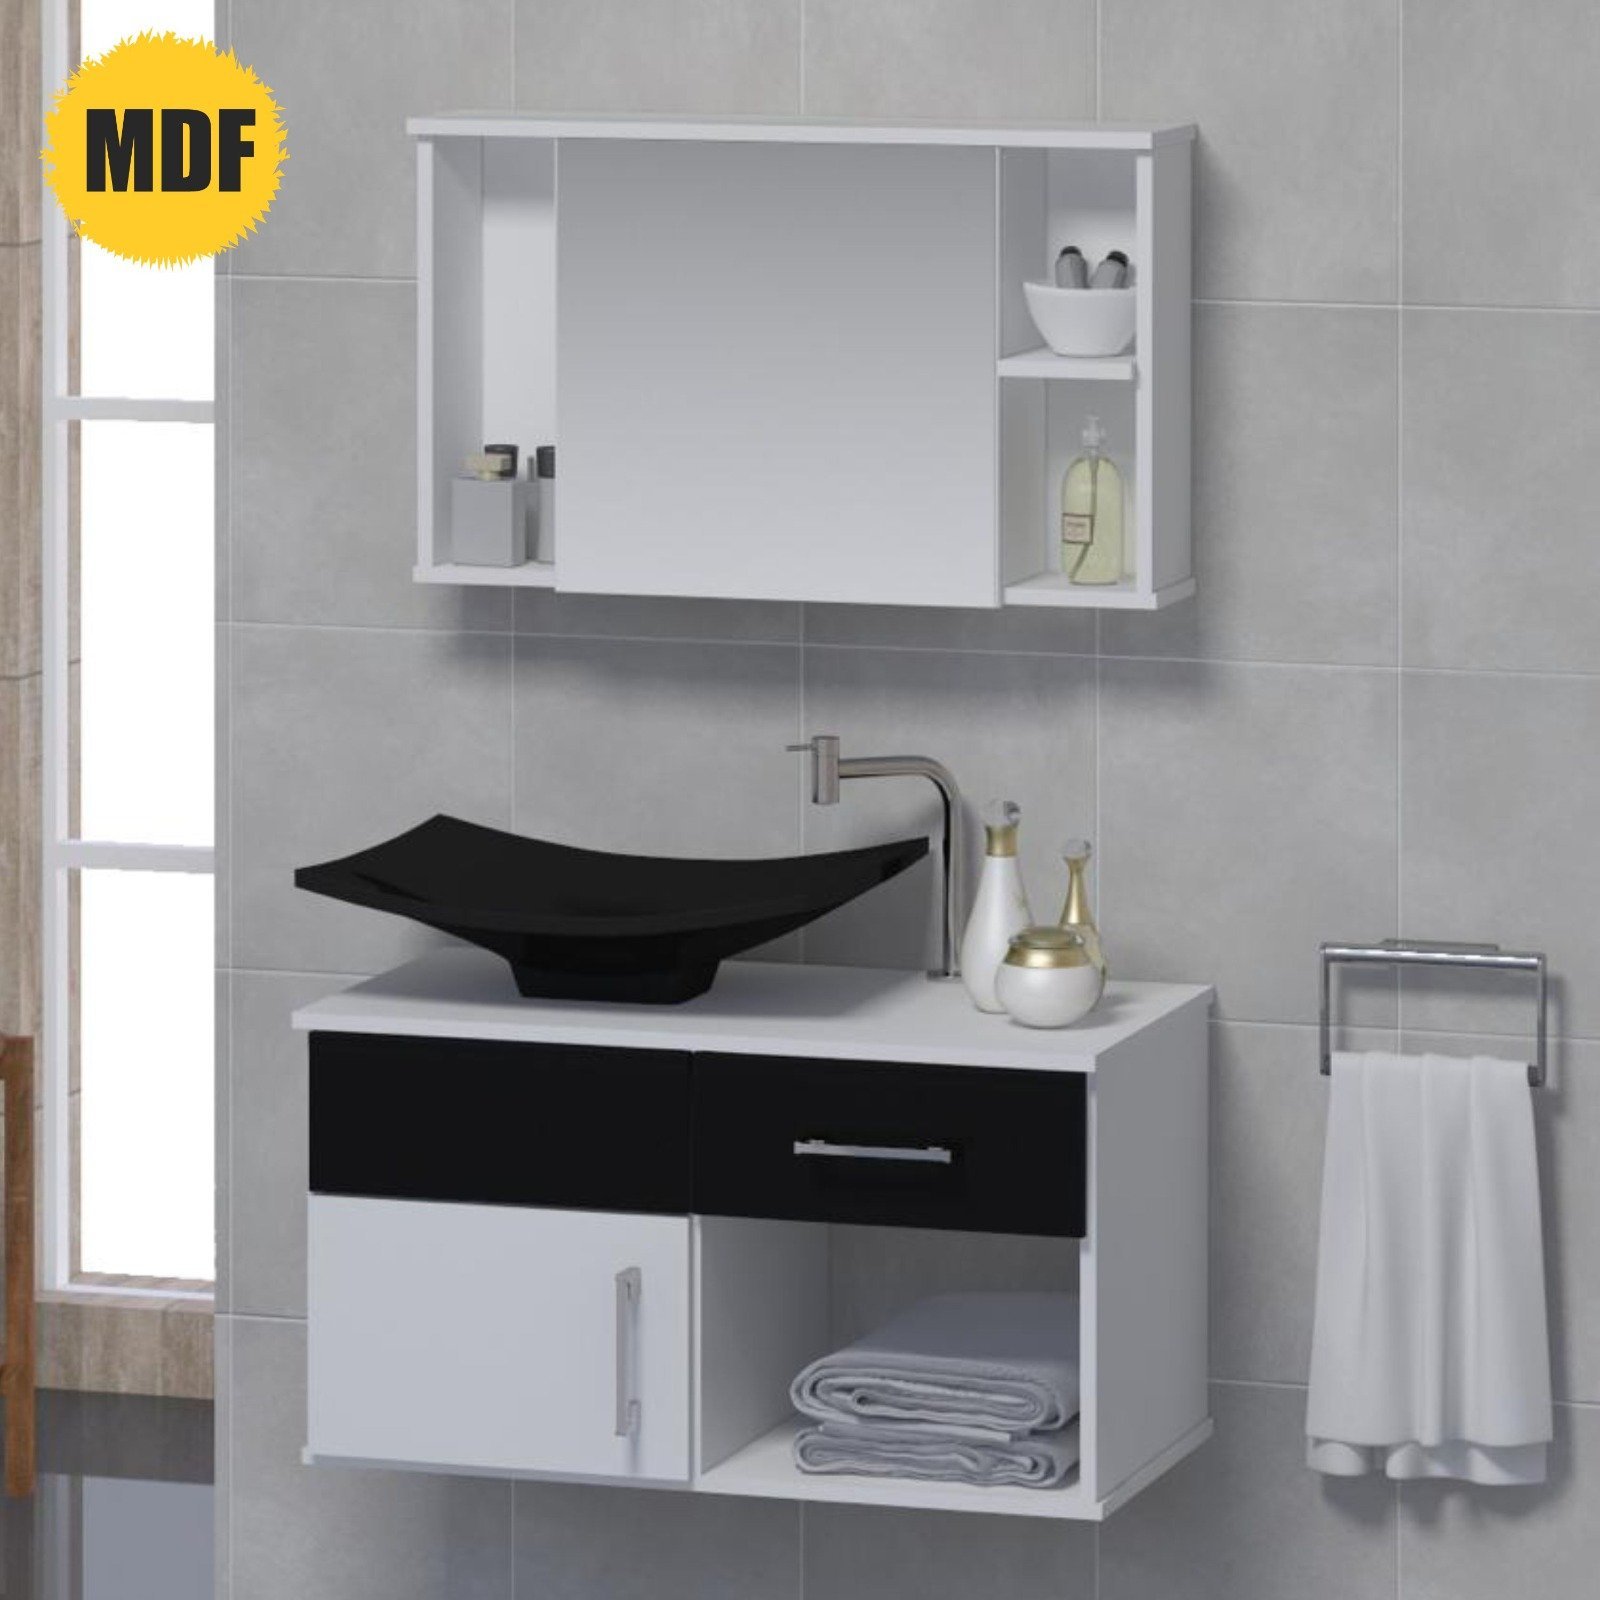 Conjunto New Stilo MDF gabinete para banheiro com cuba e espelheira.